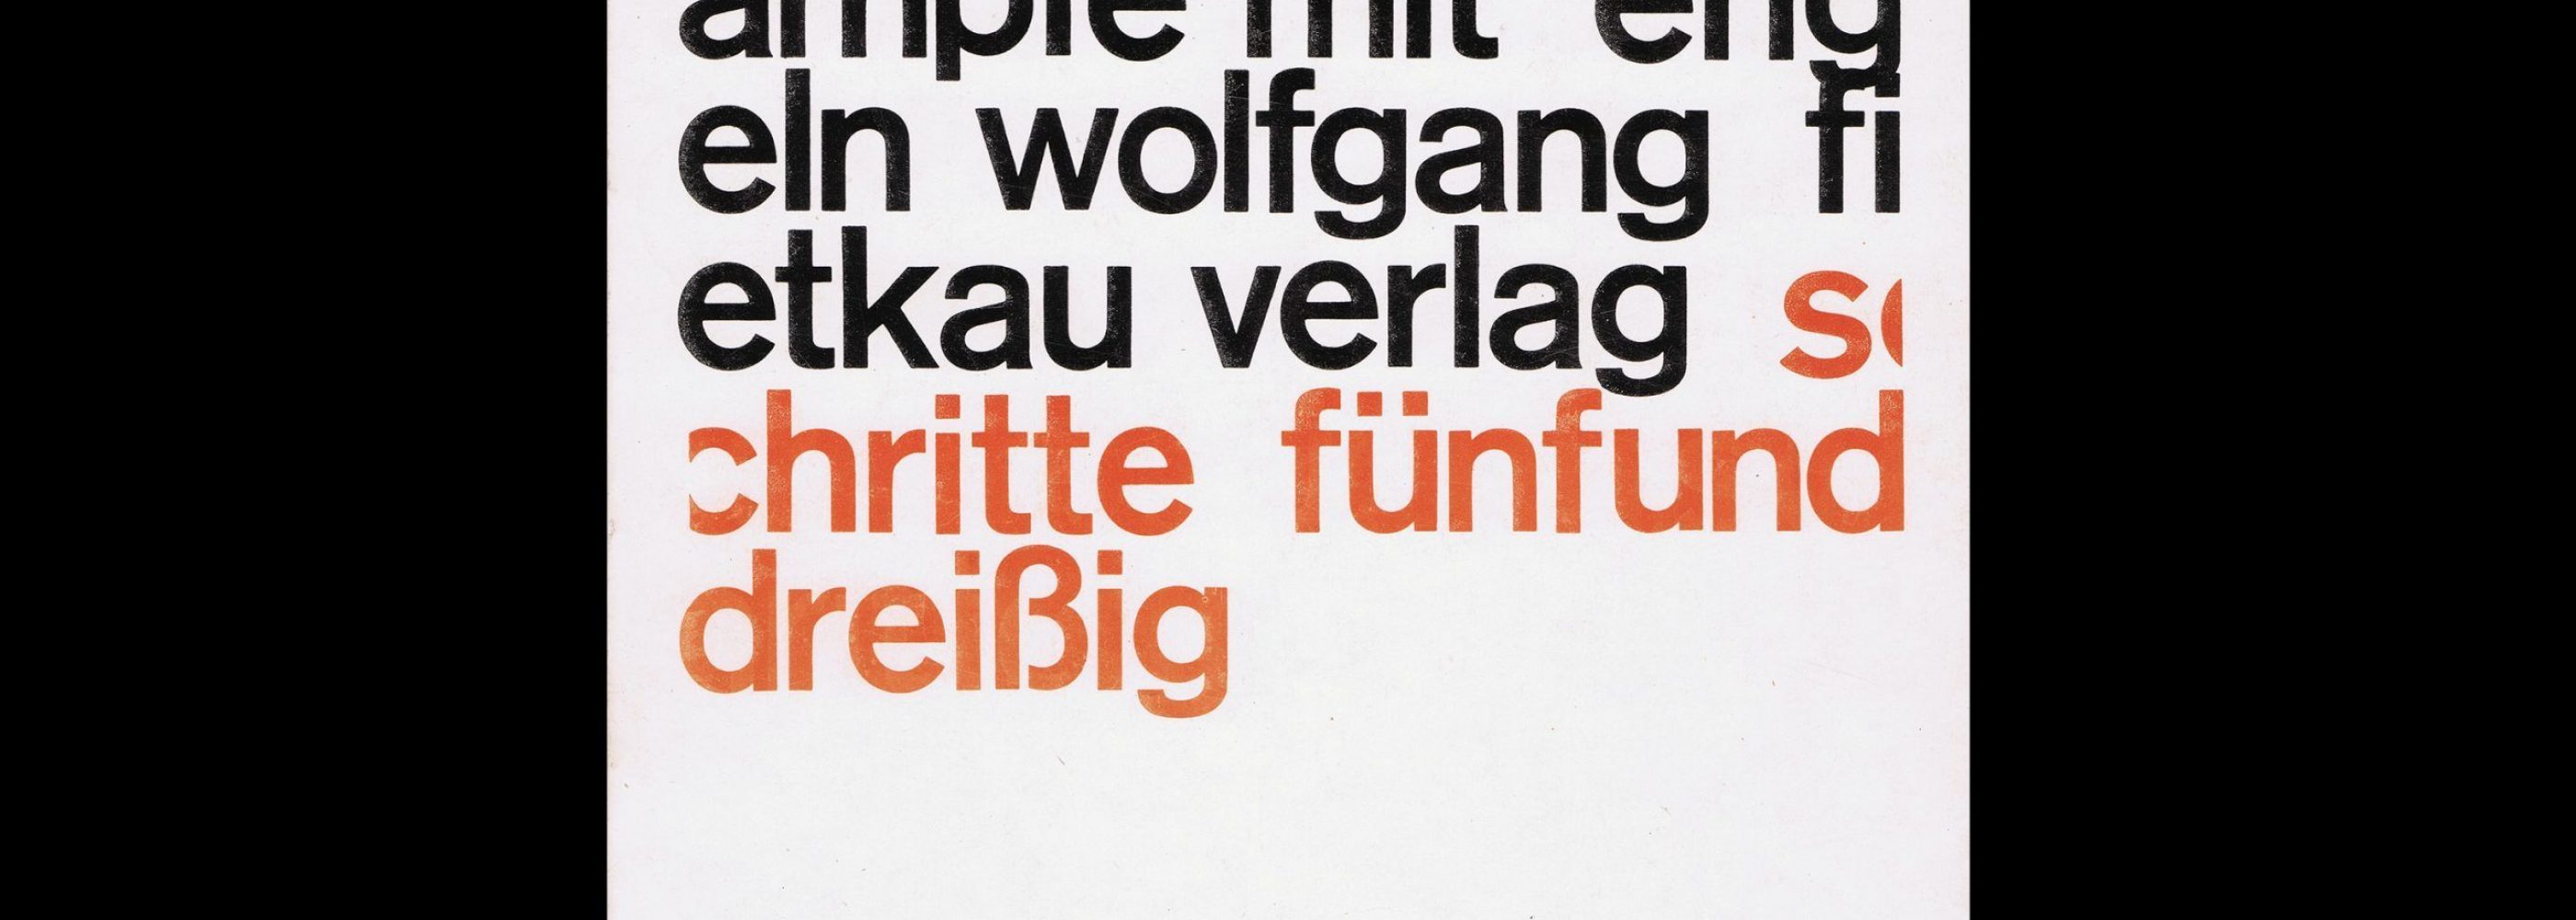 Oskar Cösterm Kämpfe mit Engeln, Wolfgang Fietkau Verlag, 1979. Designed by Christian Chruxin